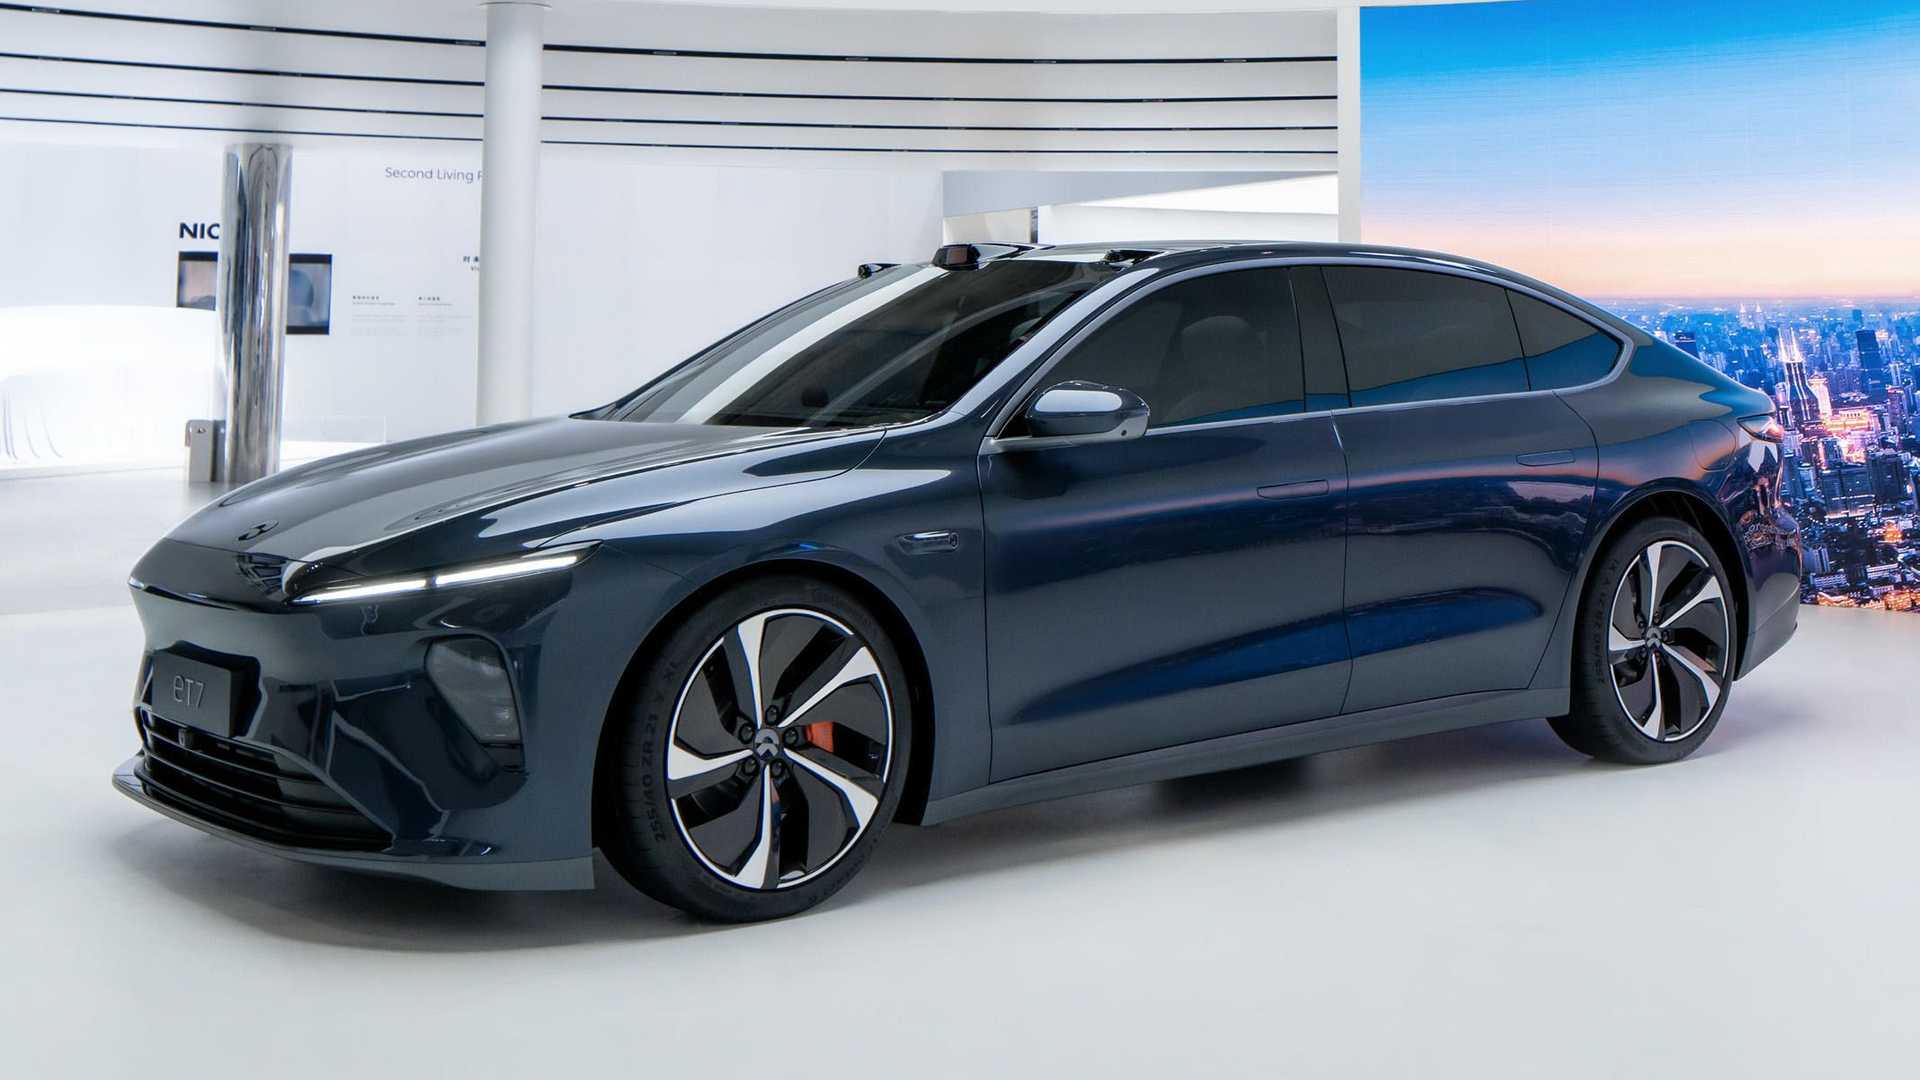 Pembuat mobil listrik pintar yang berbasis di China, Nio, telah mengkonfirmasi bahwa ET7 baru mereka akan tersedia di pasar Jerman pada akhir 2022.